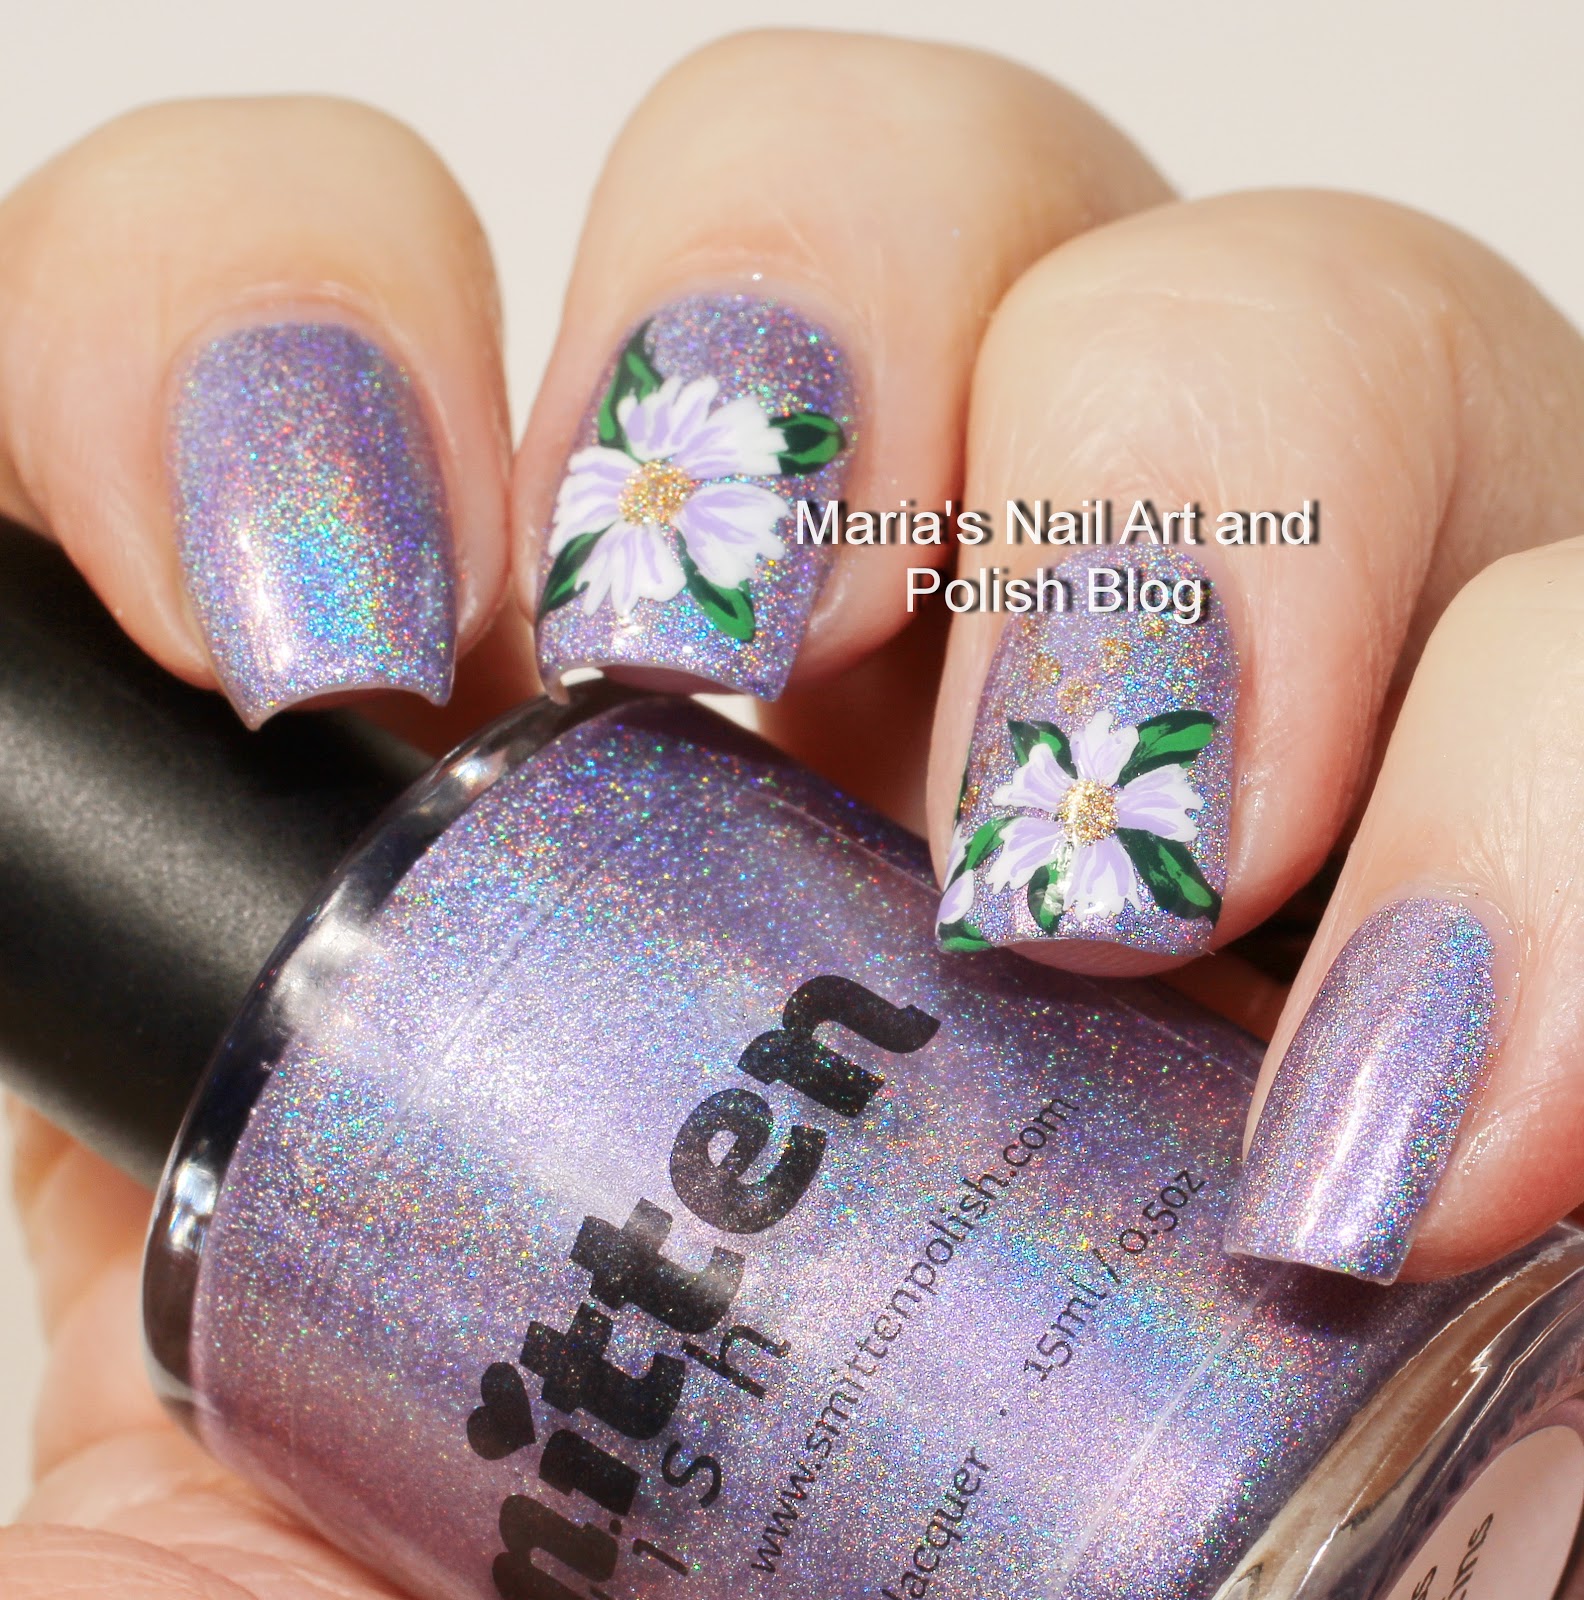 Marias Nail Art and Polish Blog: White and lavender floral nail art